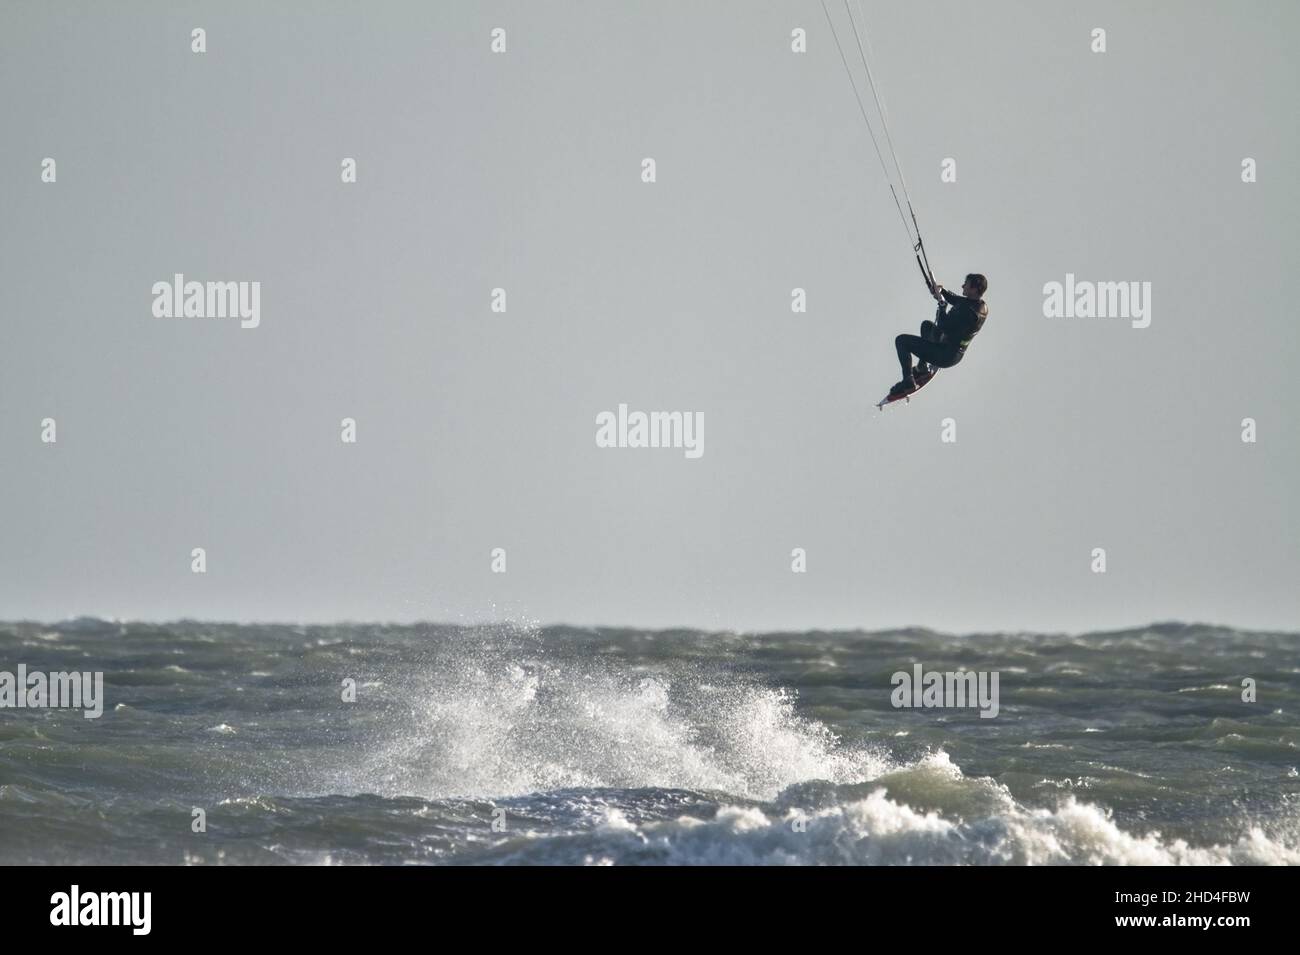 Airborne, volo Kite Surfer saltare le onde nel Solent, Avon Beach Christchurch Regno Unito Foto Stock